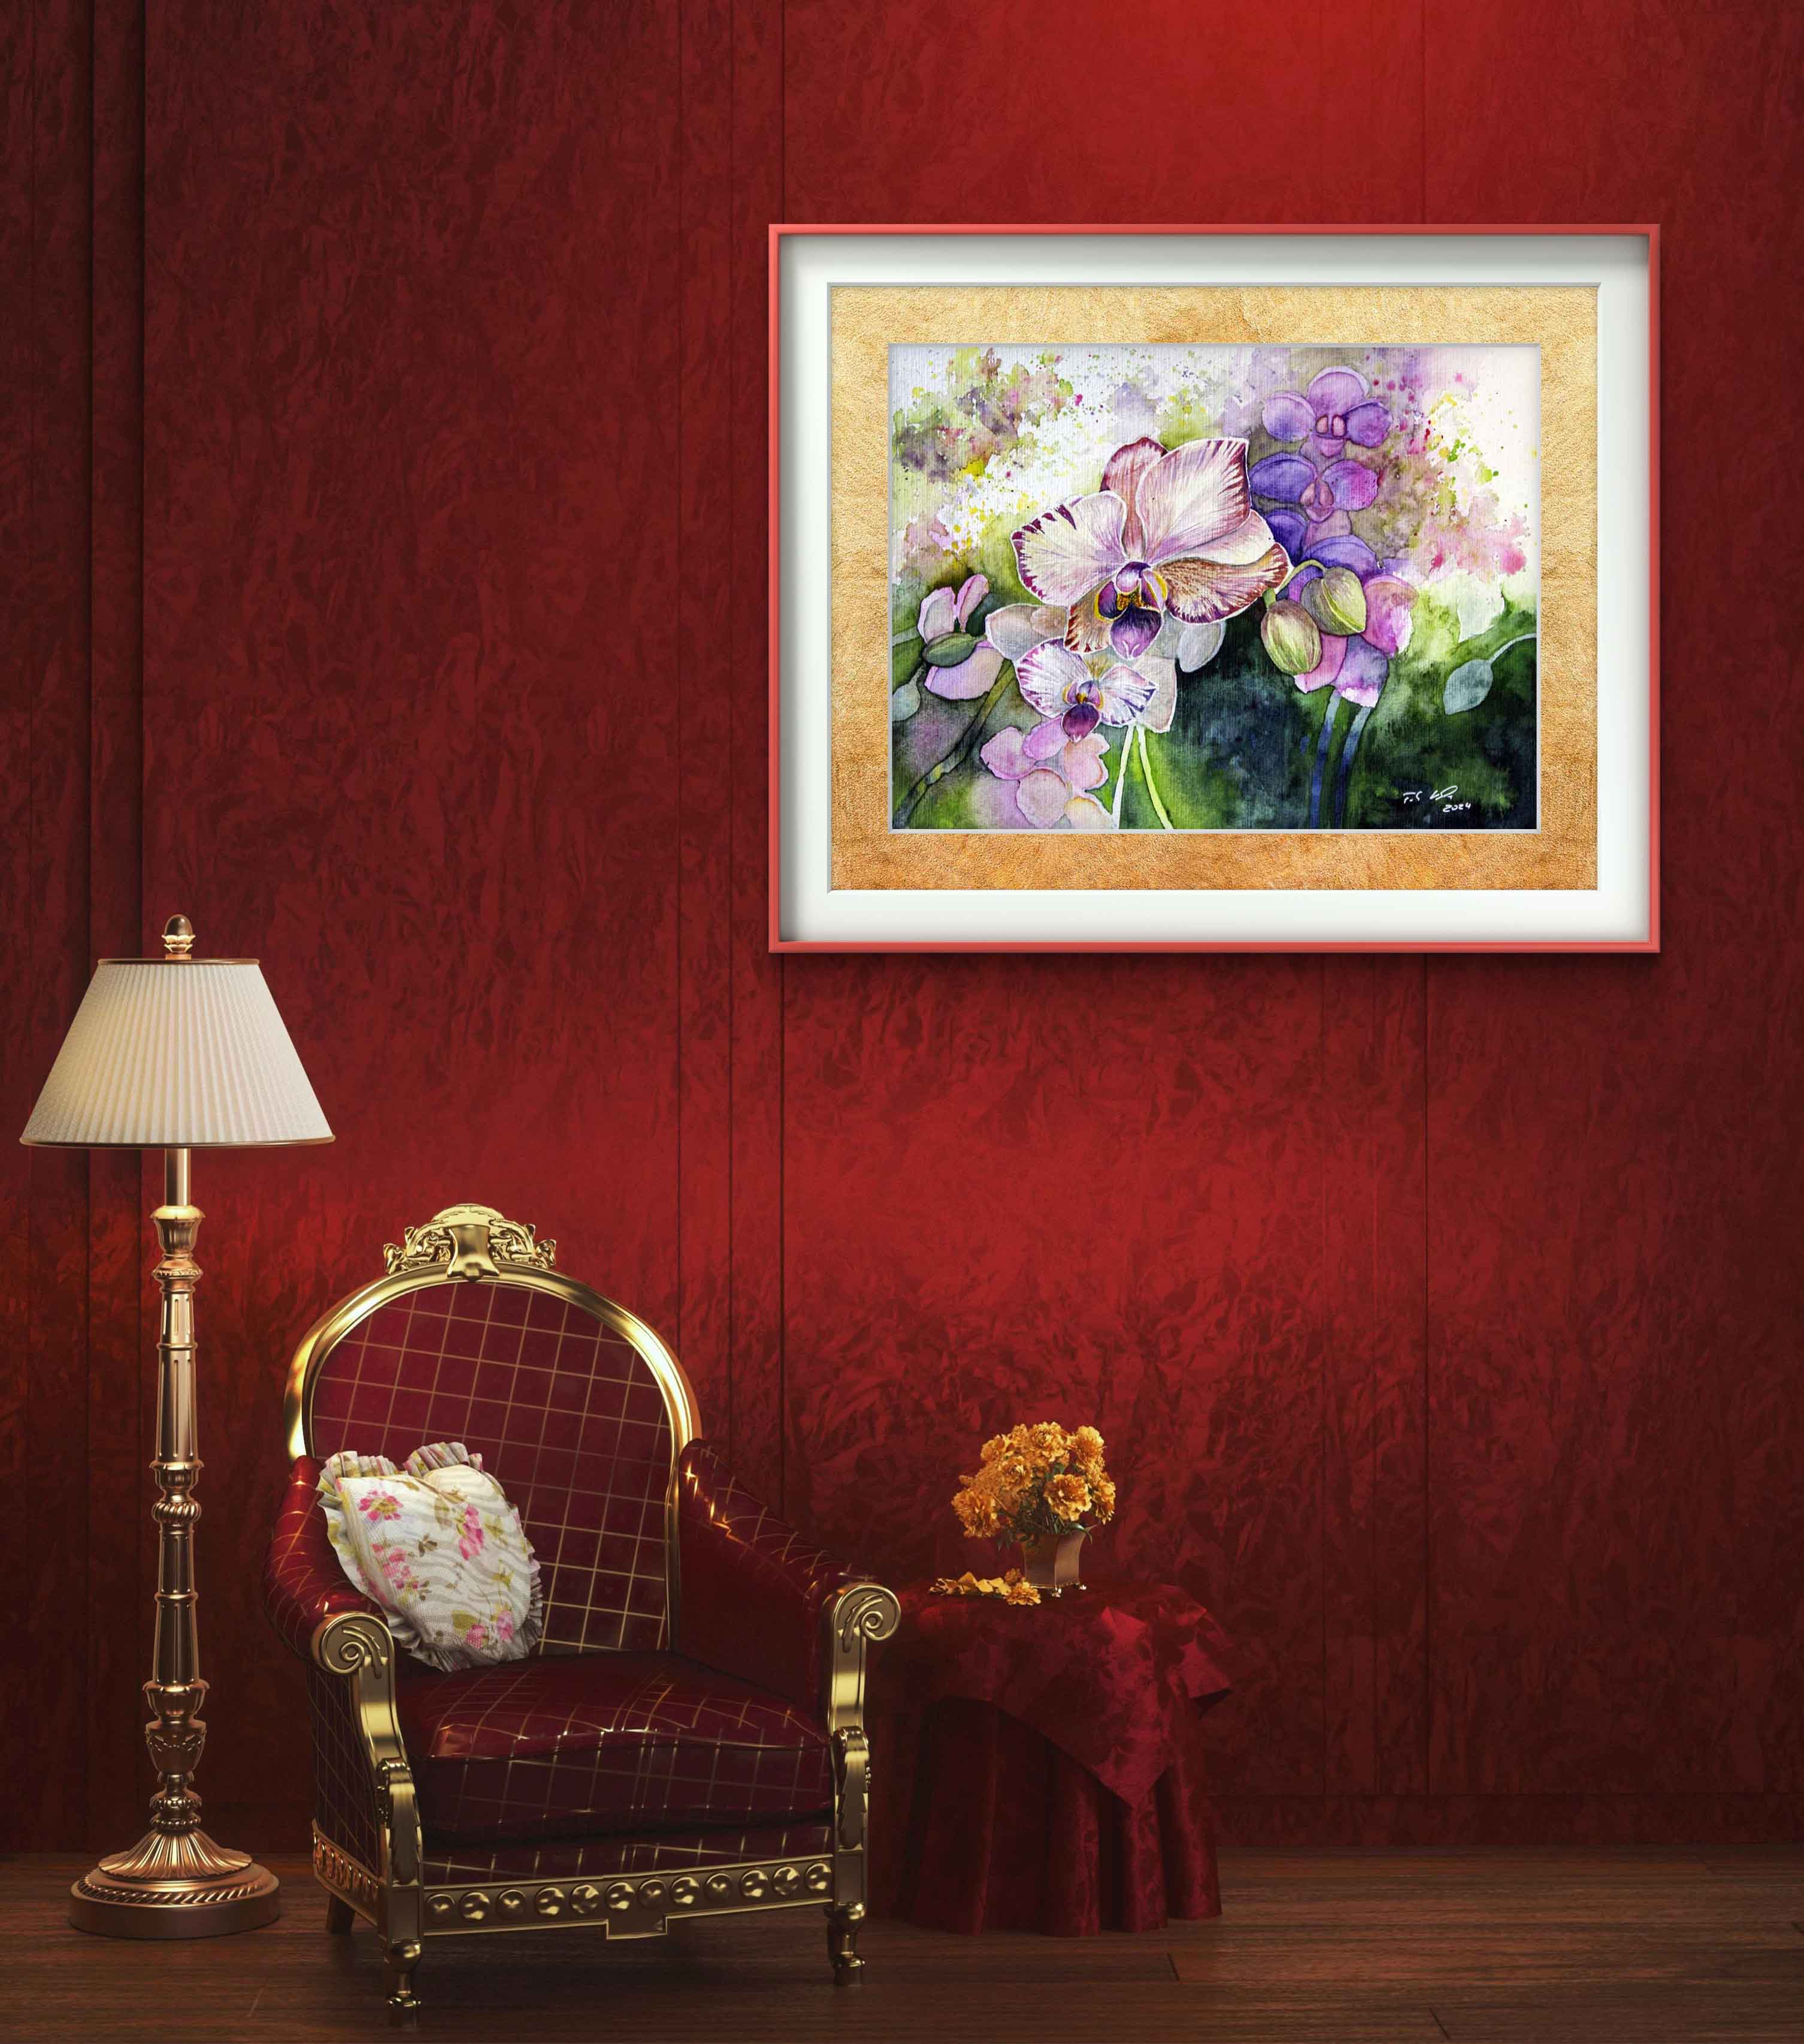 Farbspiel mit Orchideenblüten (c) Aquarell von Frank Koebsch - Beispiel 2 für eine Rahmung an einer Wand